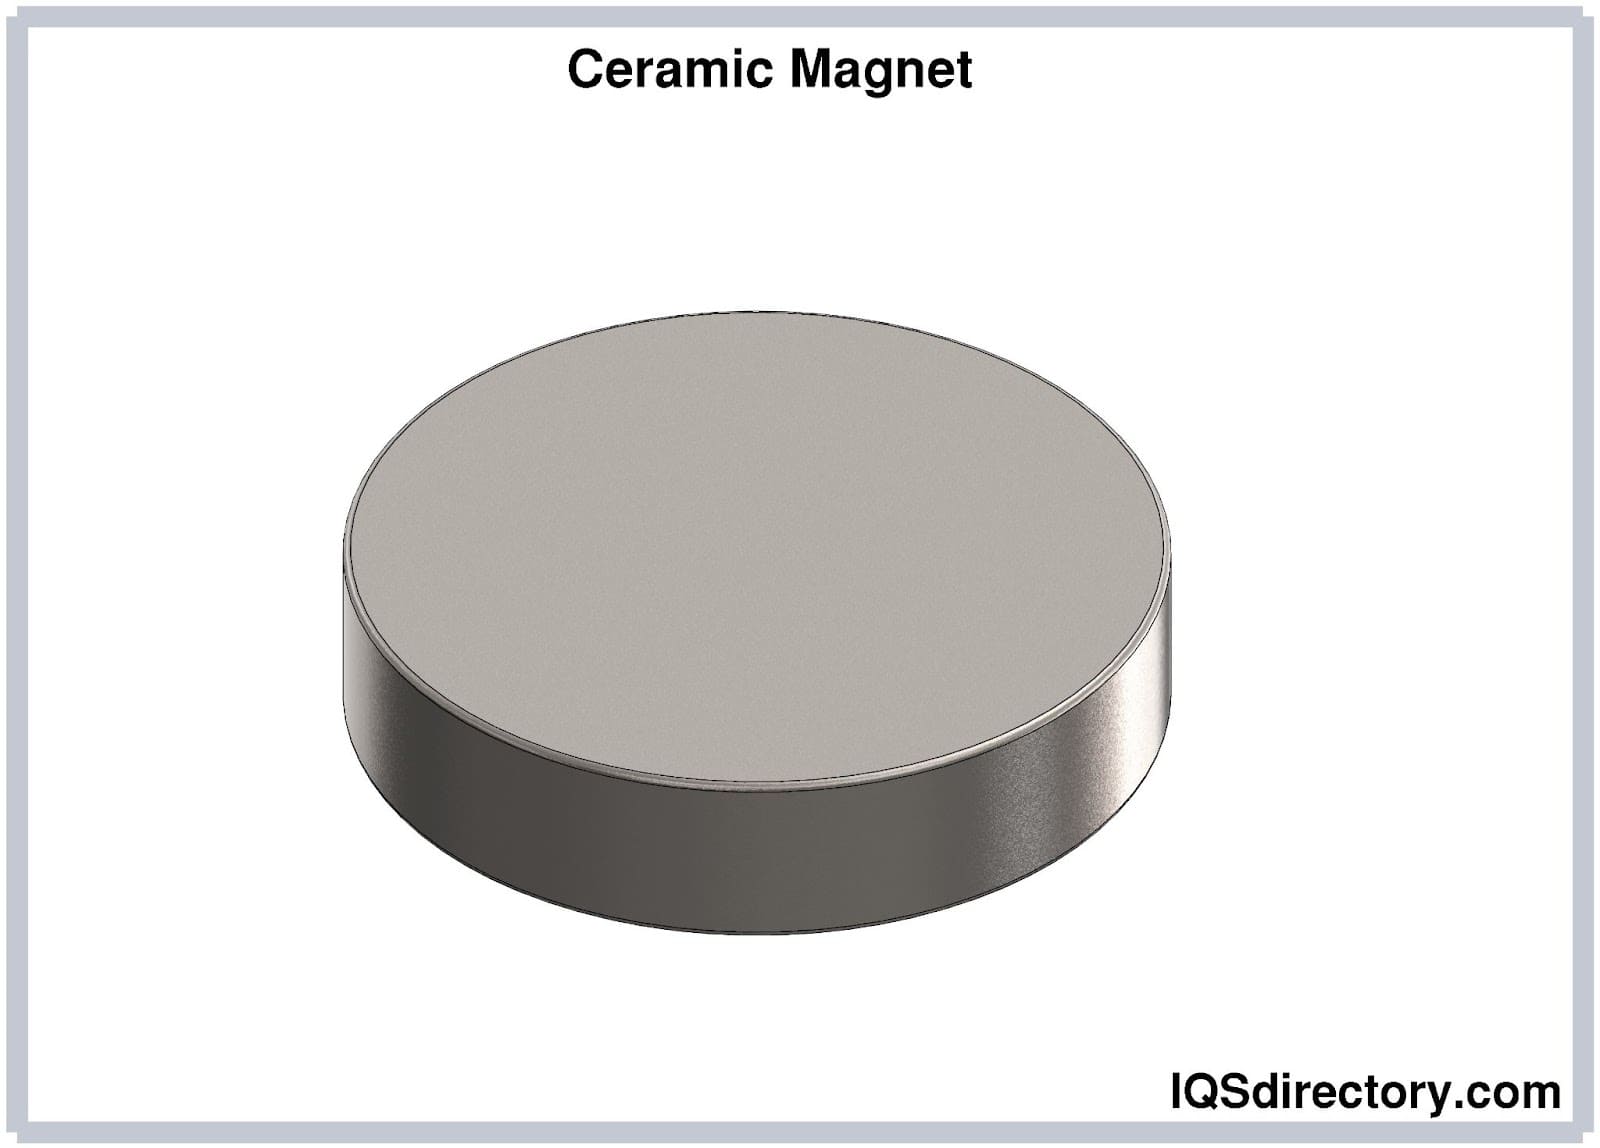 Ceramic Magnet